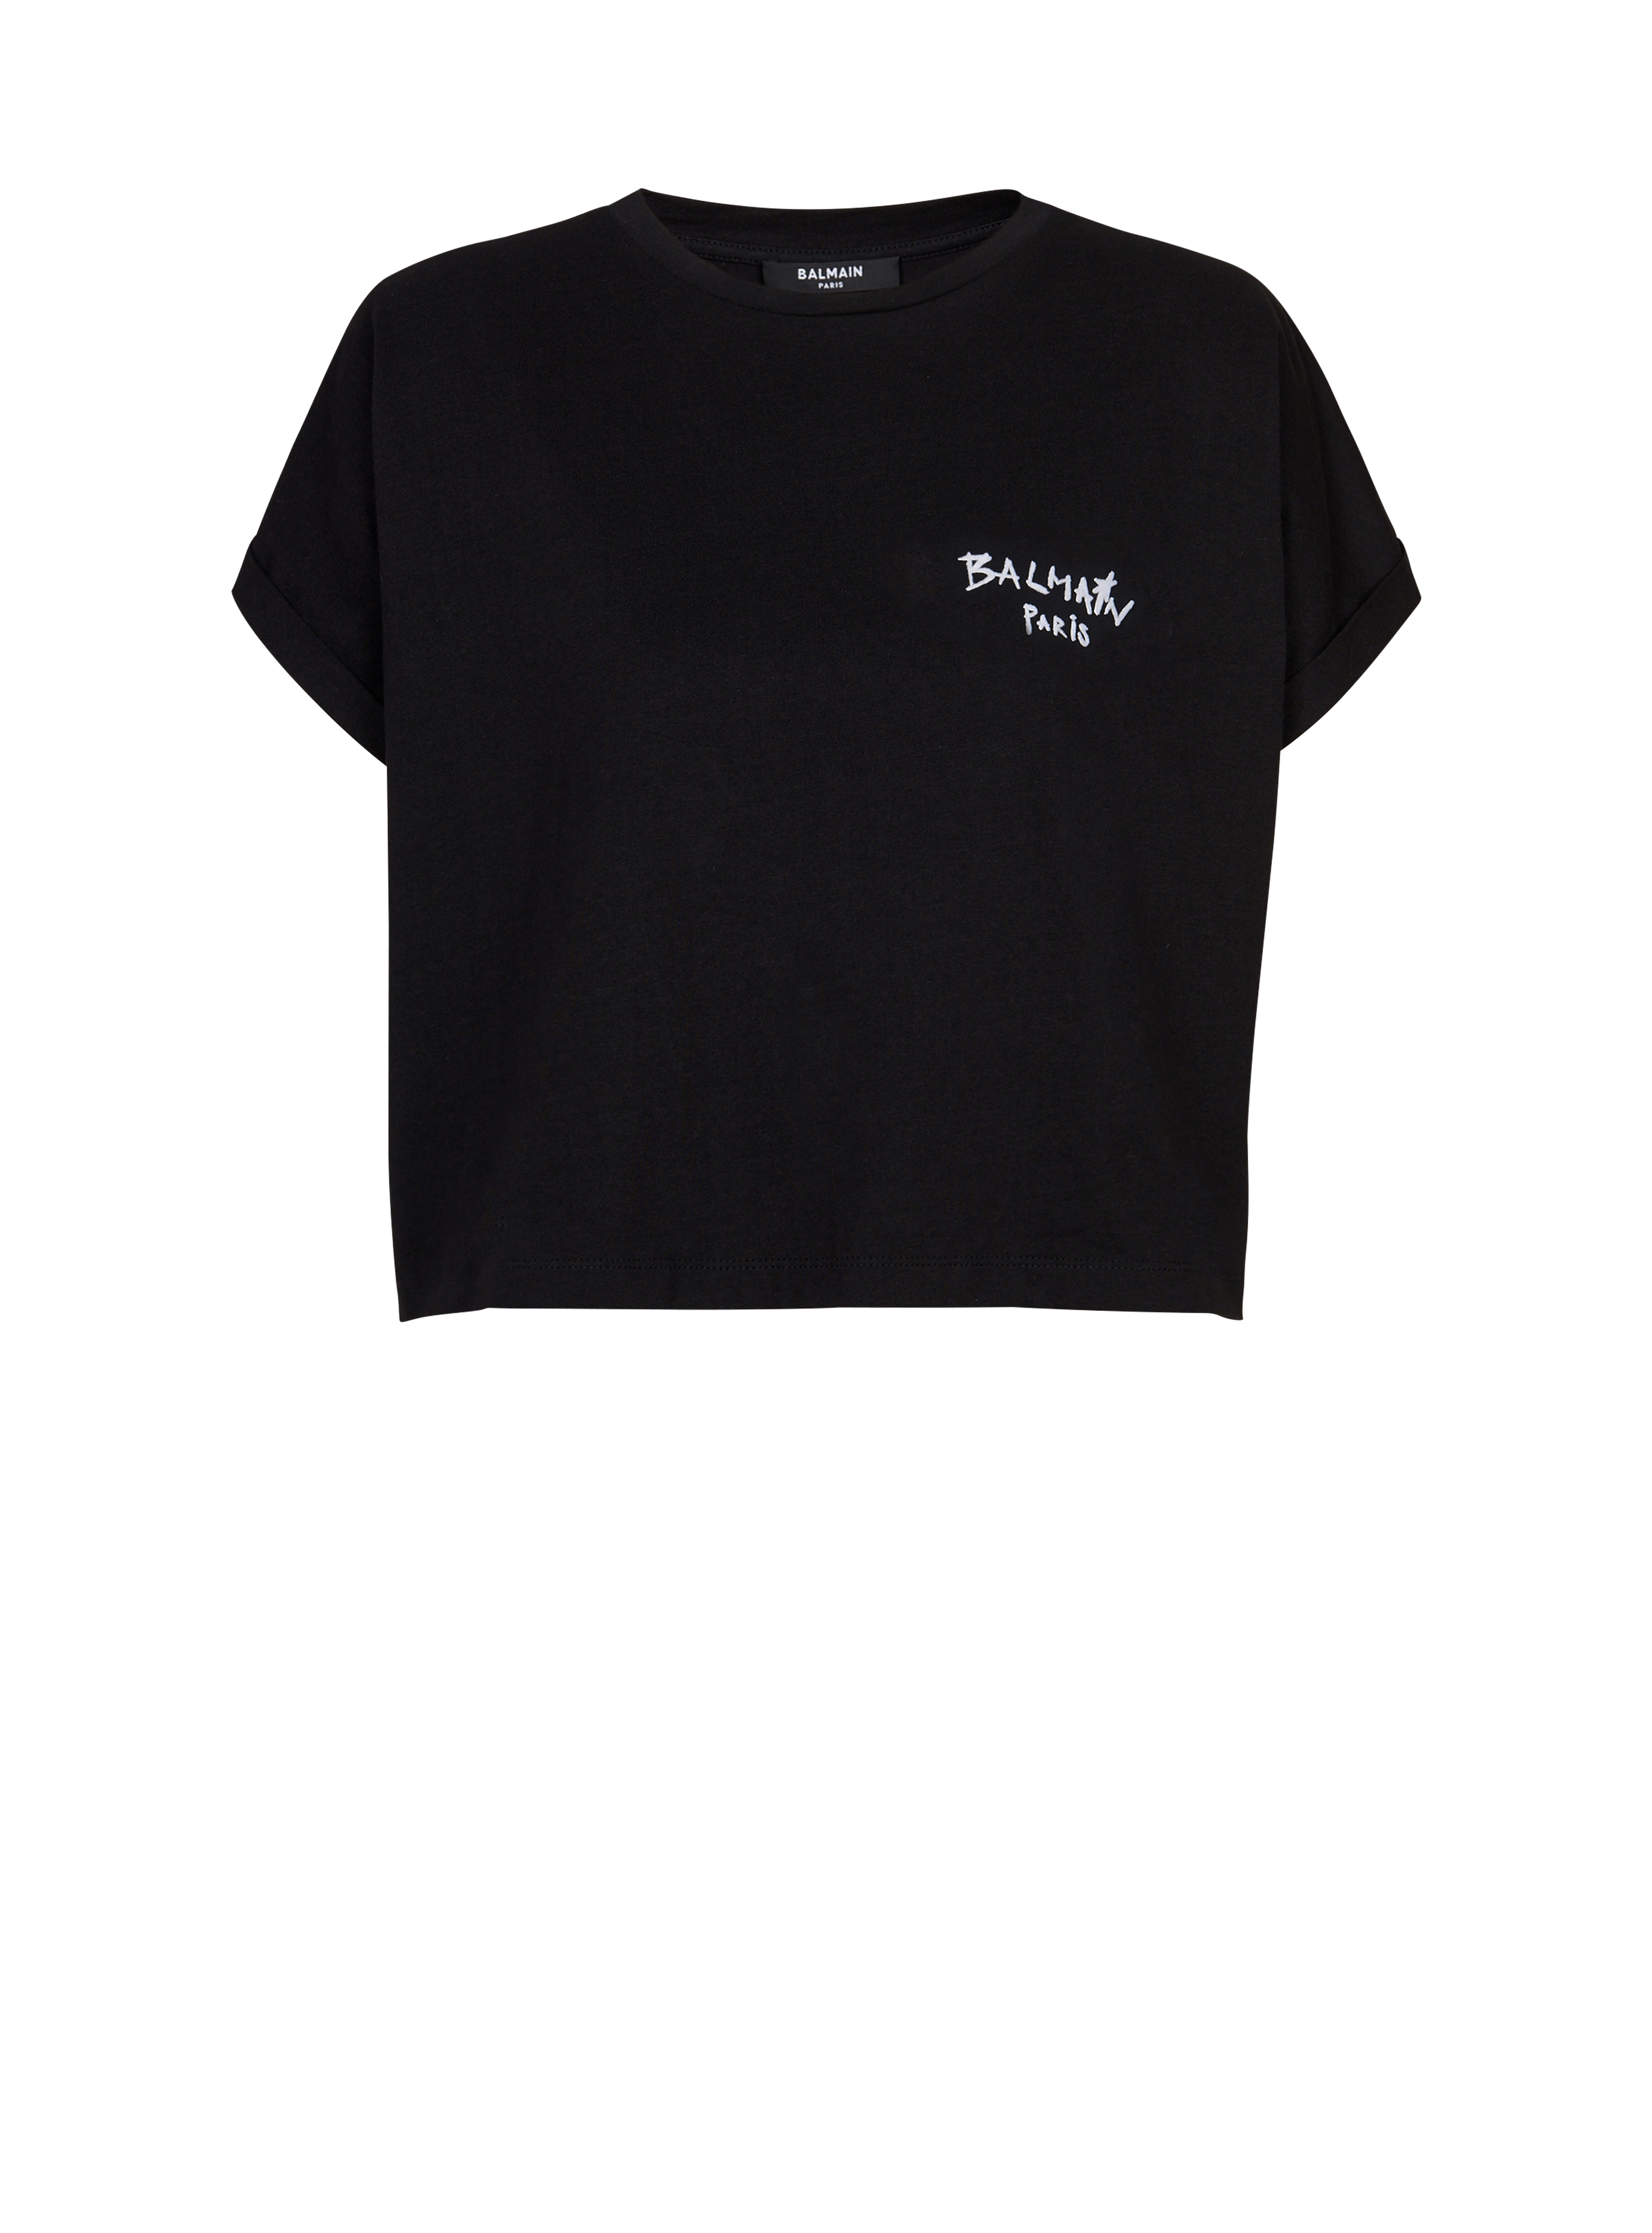 T-shirt corta in cotone con piccolo logo Balmain graffiti floccato, nero